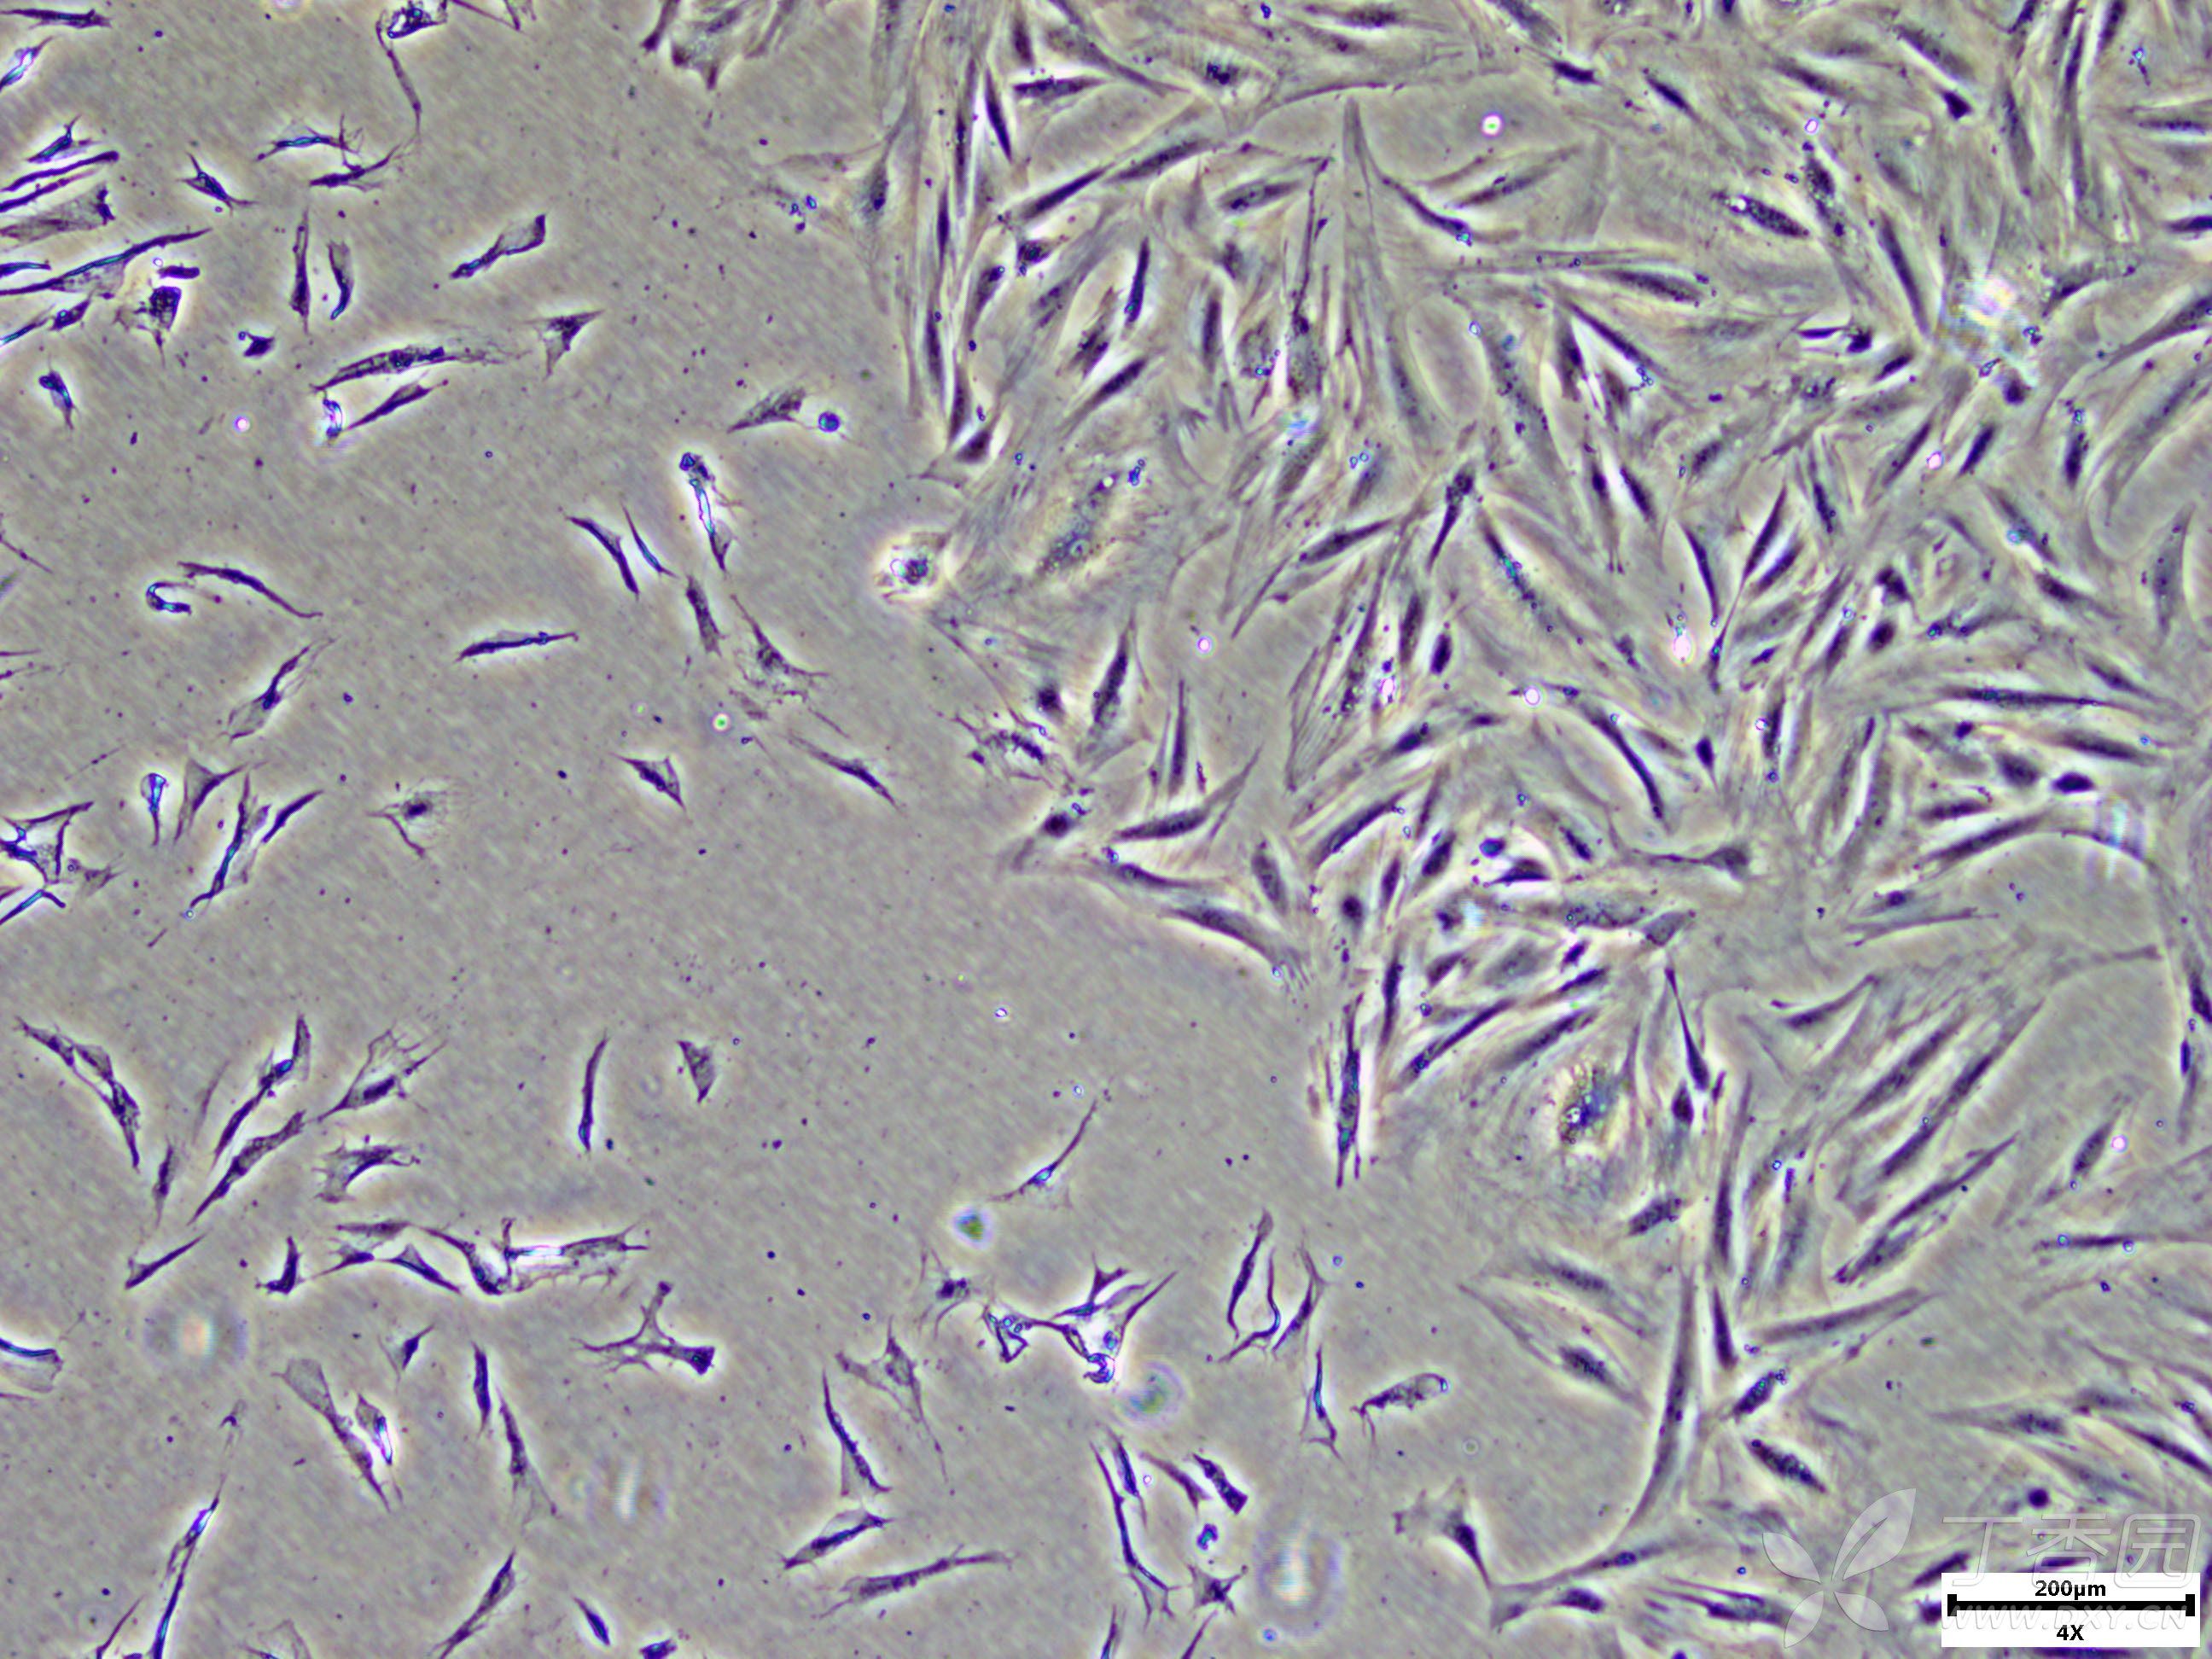 2正常大鼠皮肤成纤维细胞与形态异常的大鼠成纤维细胞交界